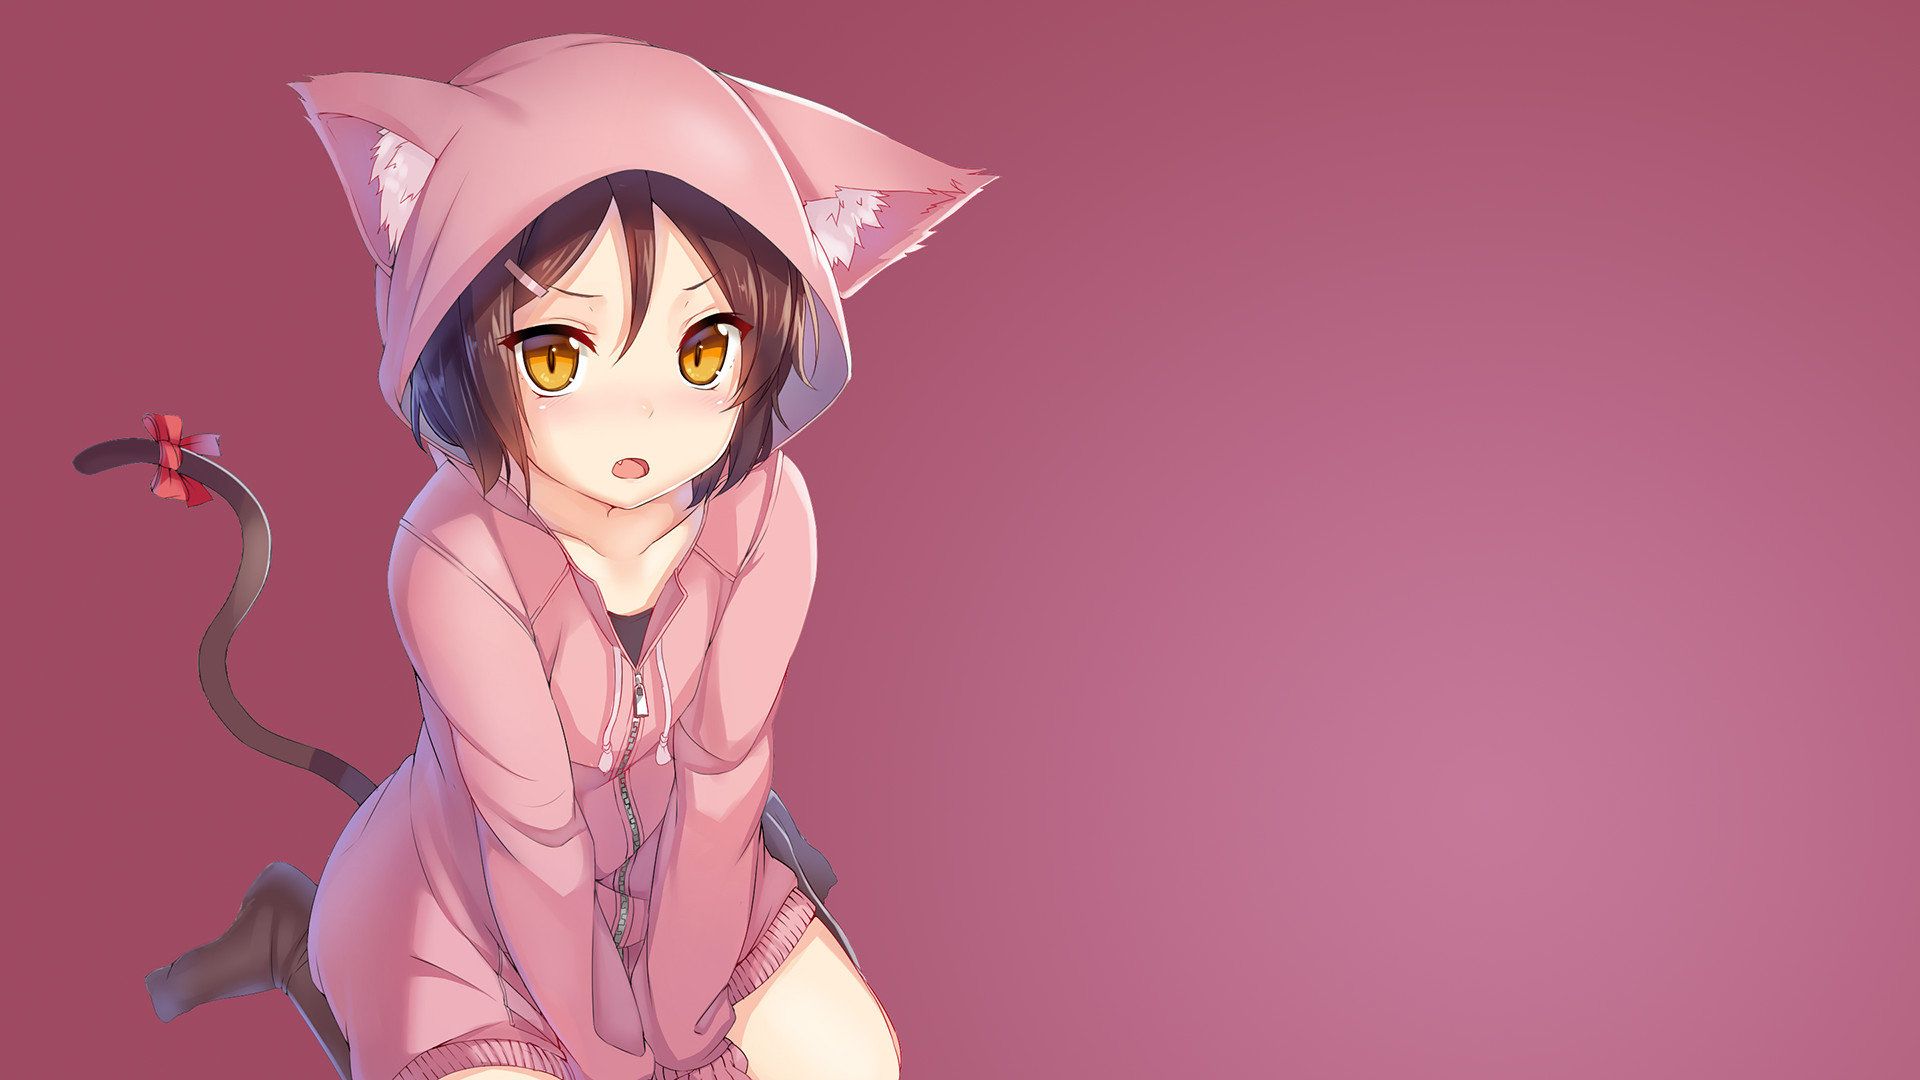 Hình nền HD cho máy tính của bạn sẽ không còn là chuyện khó khăn nữa với hình ảnh cô gái Anime đầy màu sắc và sống động. Bạn sẽ tiếp cận với những tác phẩm nghệ thuật Anime đẹp mắt nhất, thiết kế tinh tế, bắt mắt và đầy màu sắc. Một trải nghiệm cực đỉnh cho tín đồ Anime và lựa chọn tuyệt vời cho máy tính của bạn. 